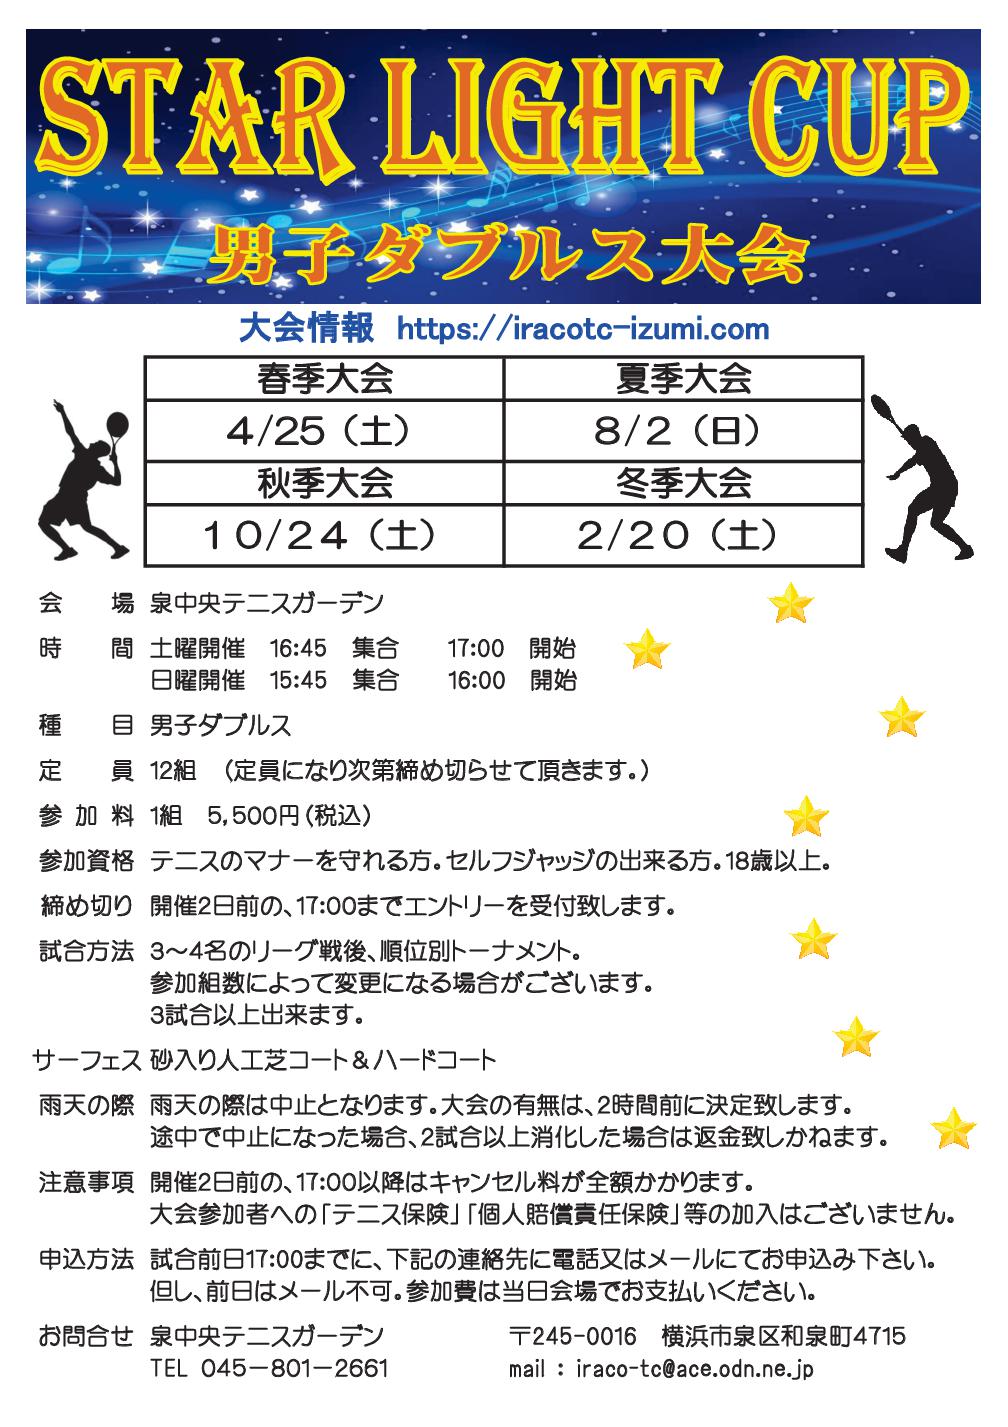 15 - &#x1f6b9;&#x1f6b9;「STAR LIGHT CUP」男子ダブルス大会